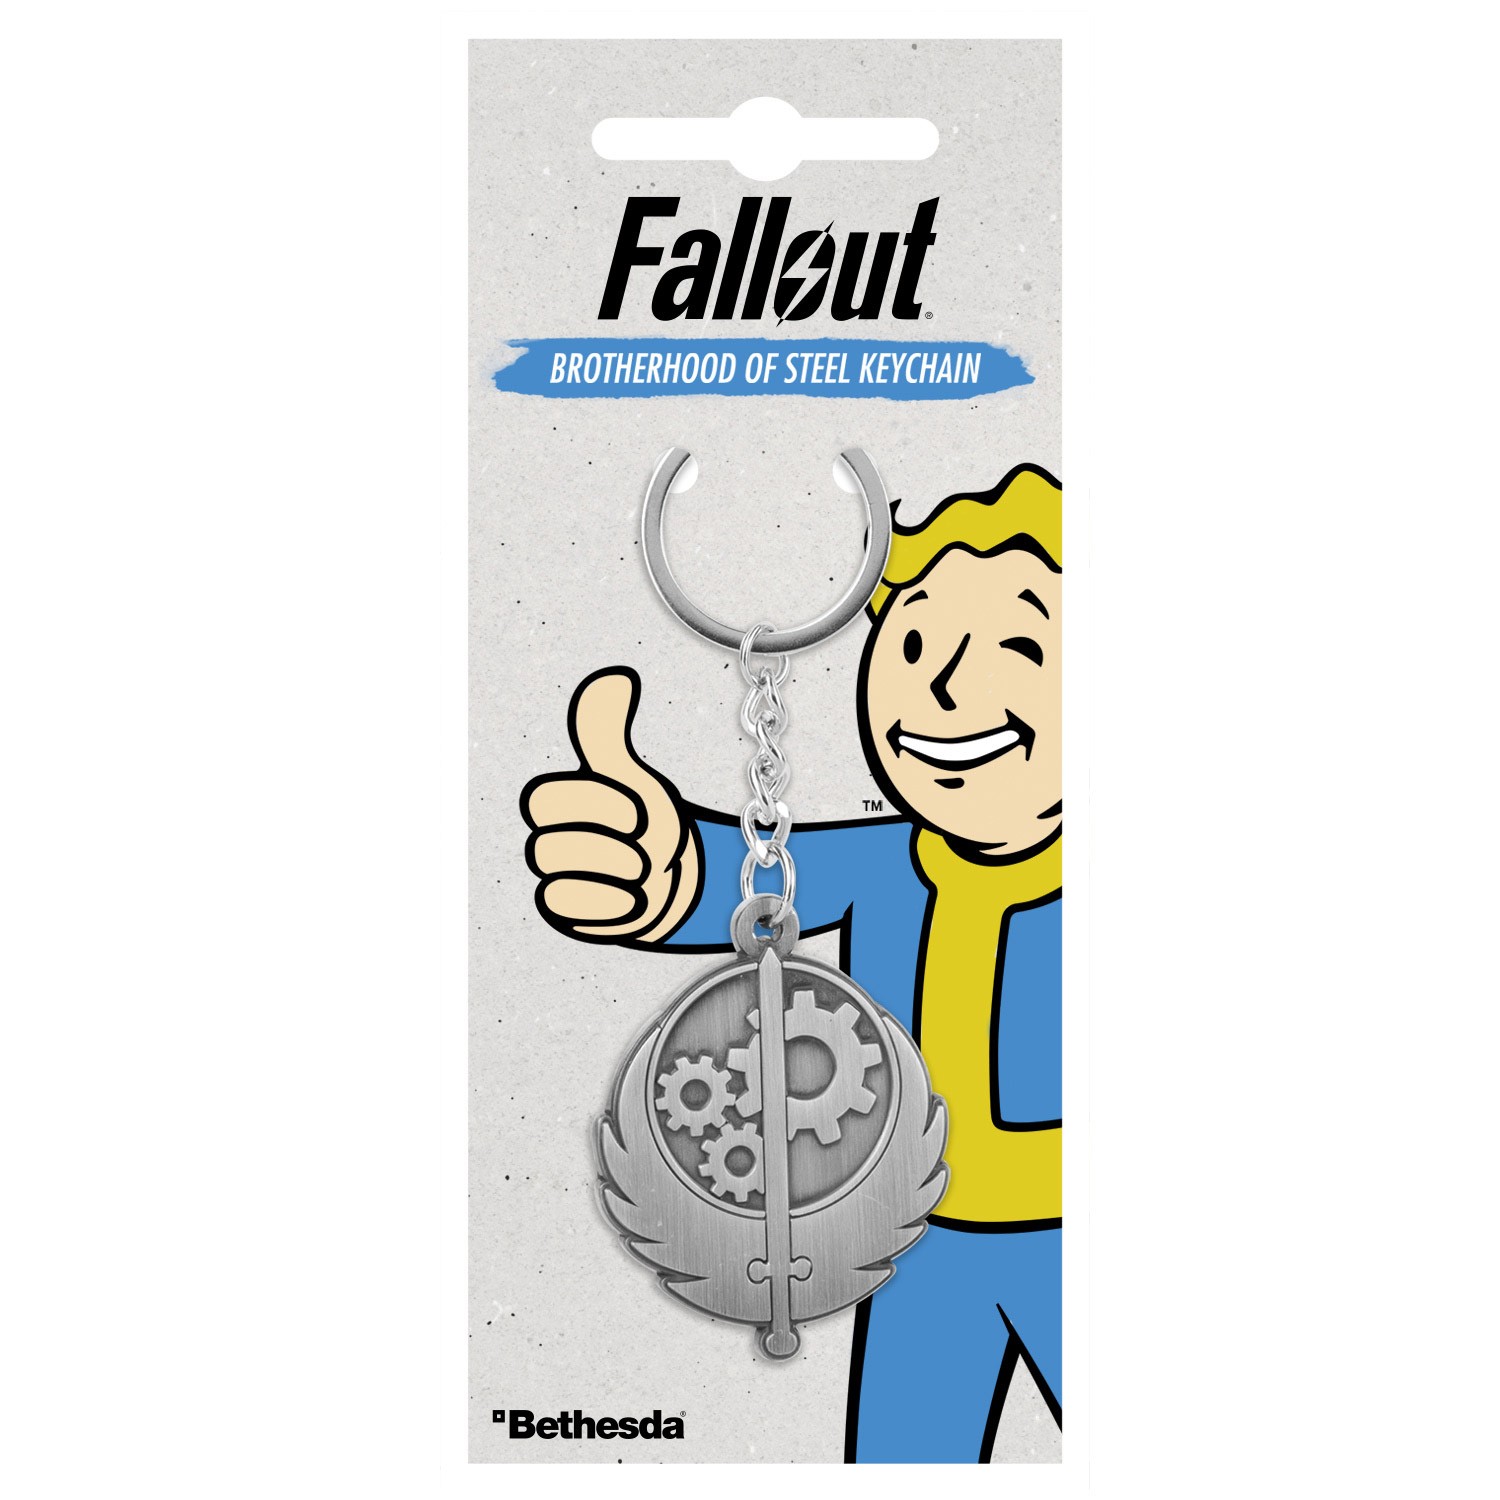 Fallout "Brotherhood of Steel" võtmehoidja